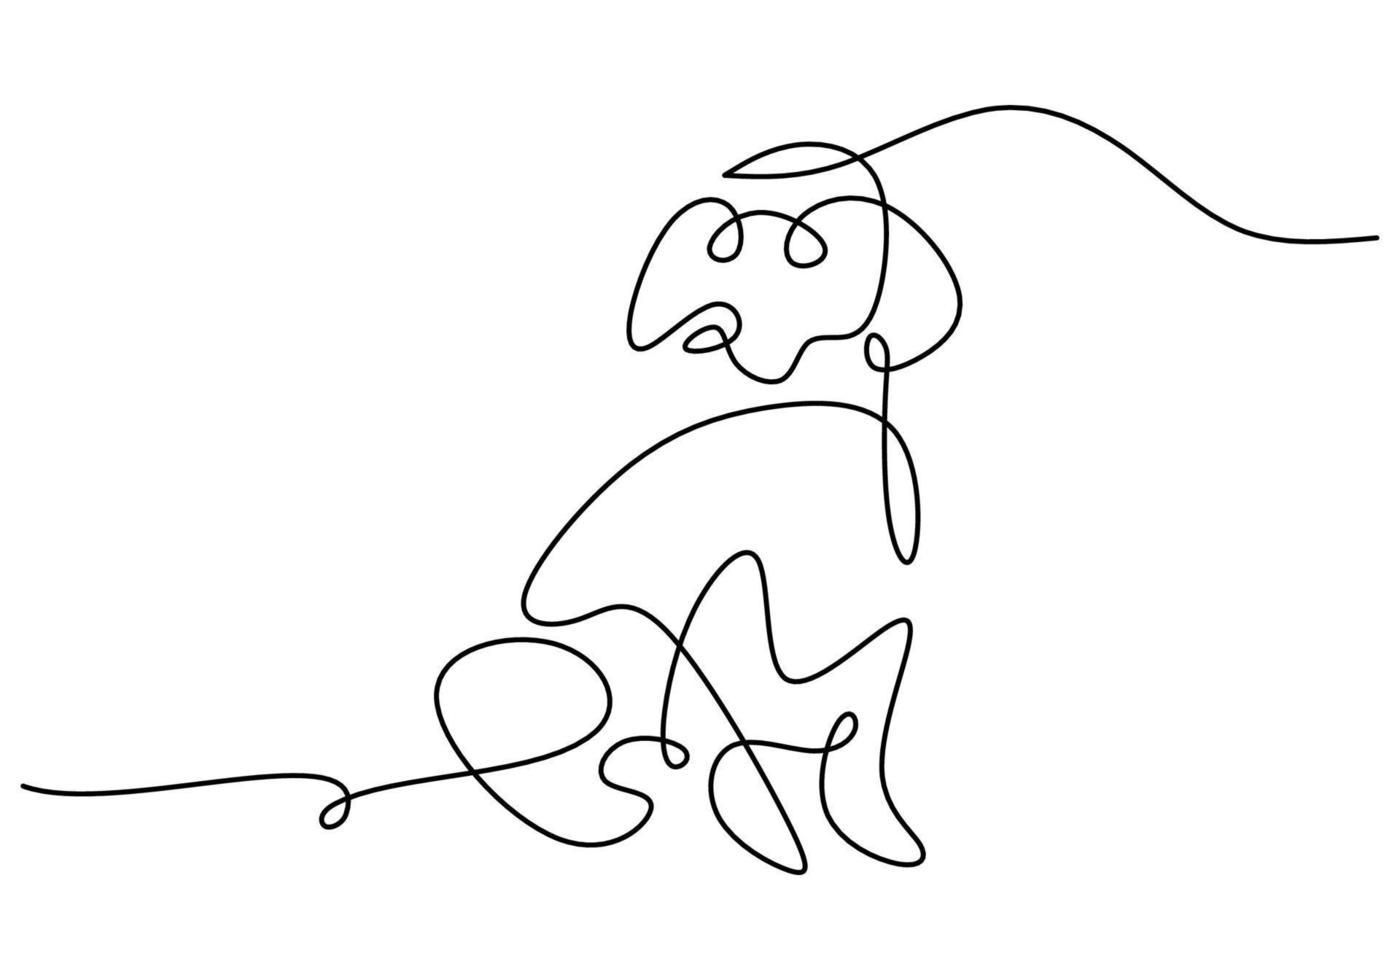 dibujado a mano una sola línea continua de perro sobre fondo blanco. vector